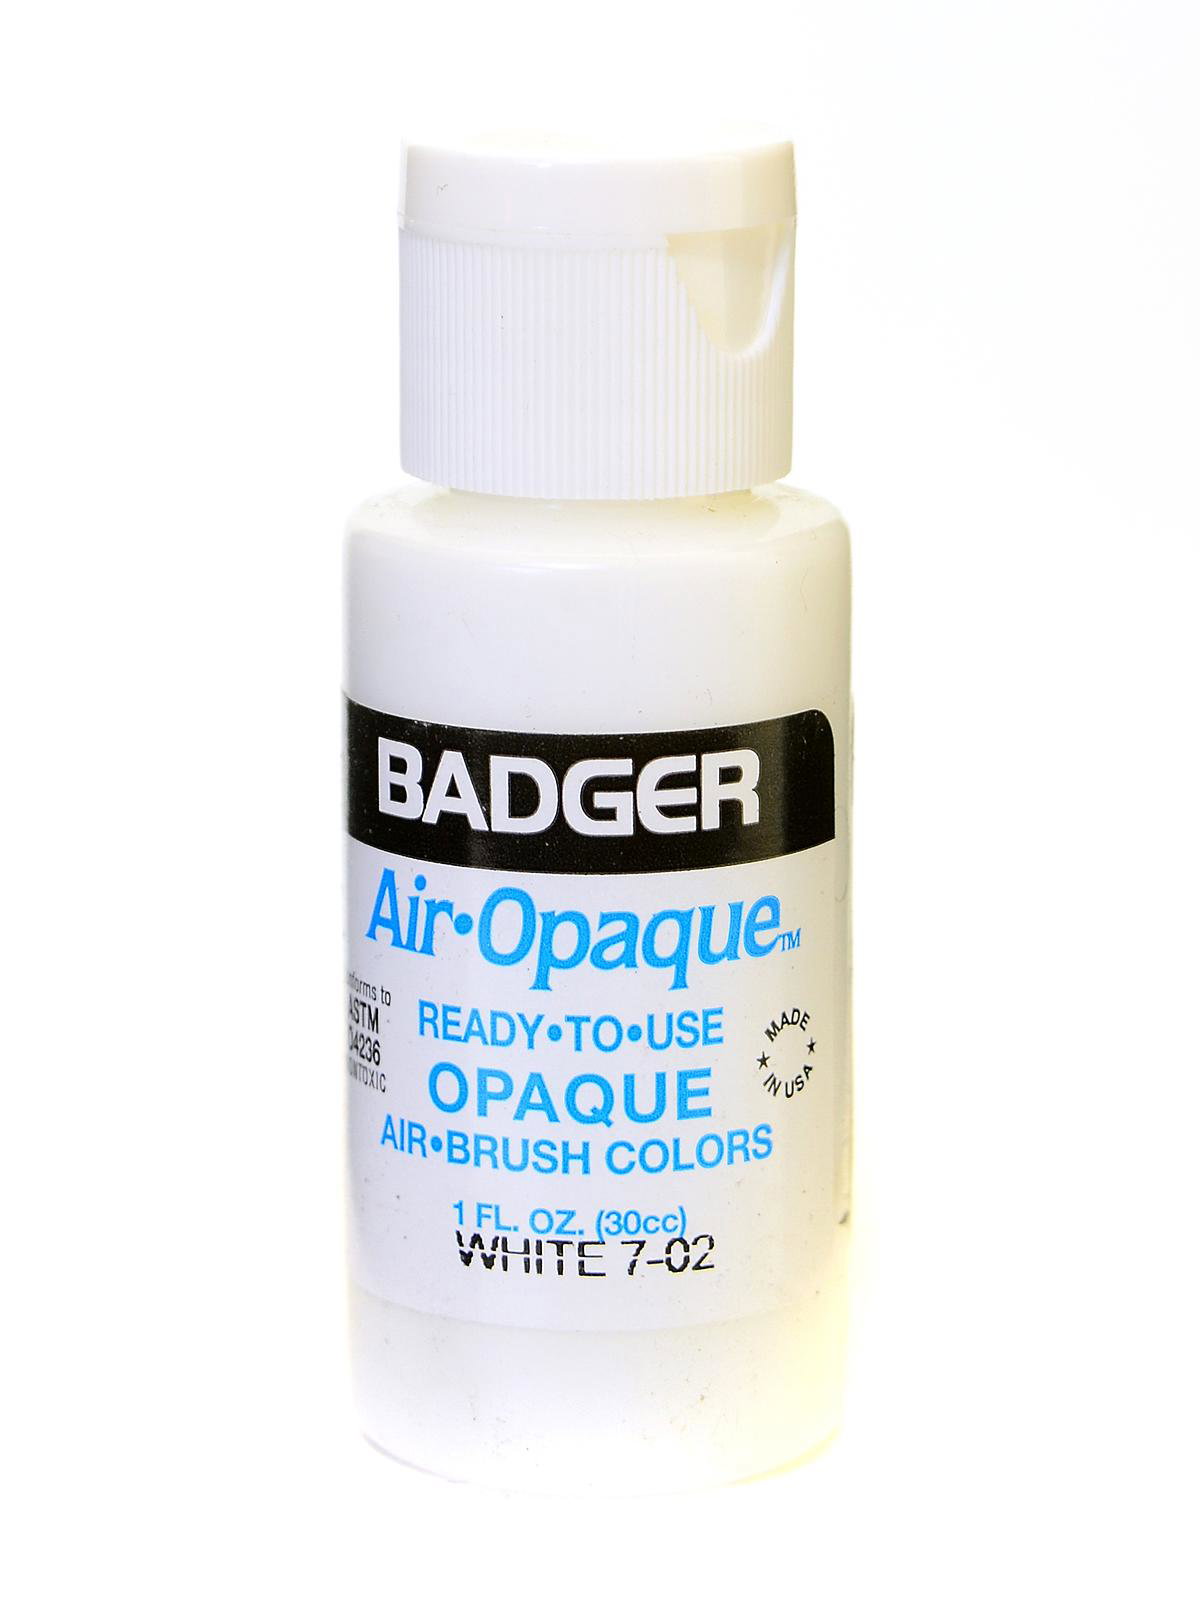 Badger Air-Brush 7100 AIR-OPAQUE Air Brush Cleaner 4oz